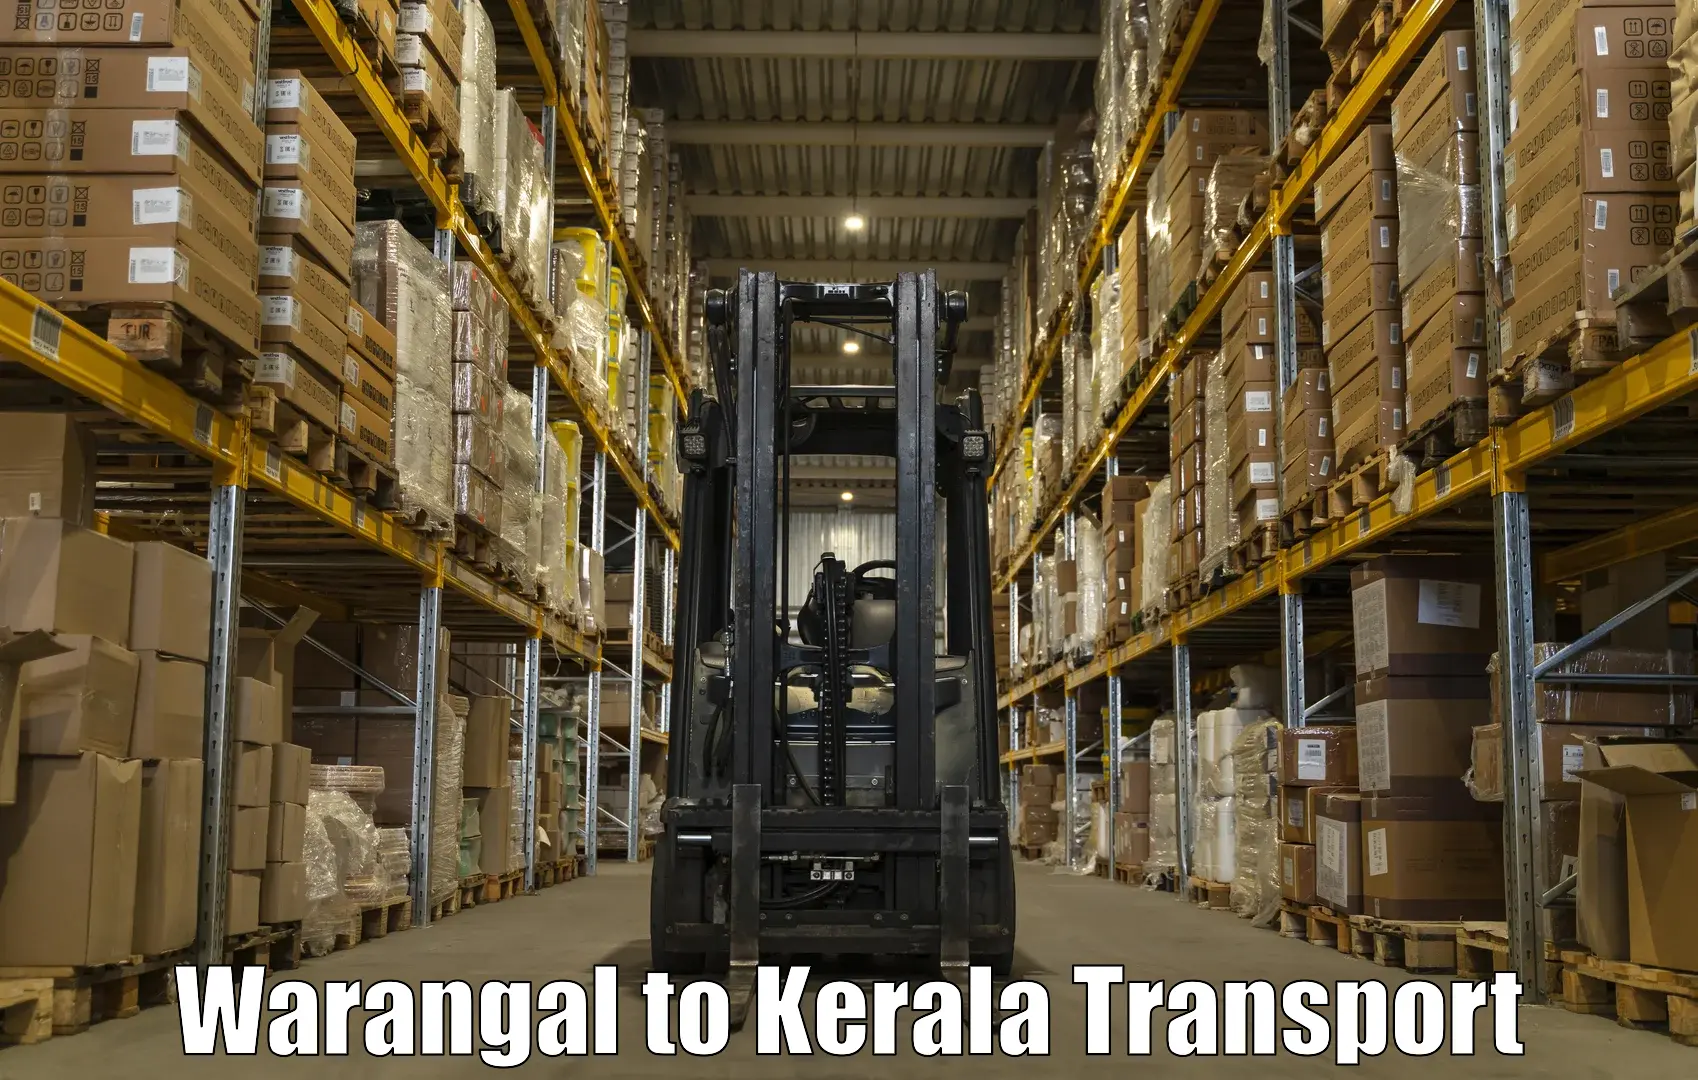 All India transport service Warangal to Kuchi